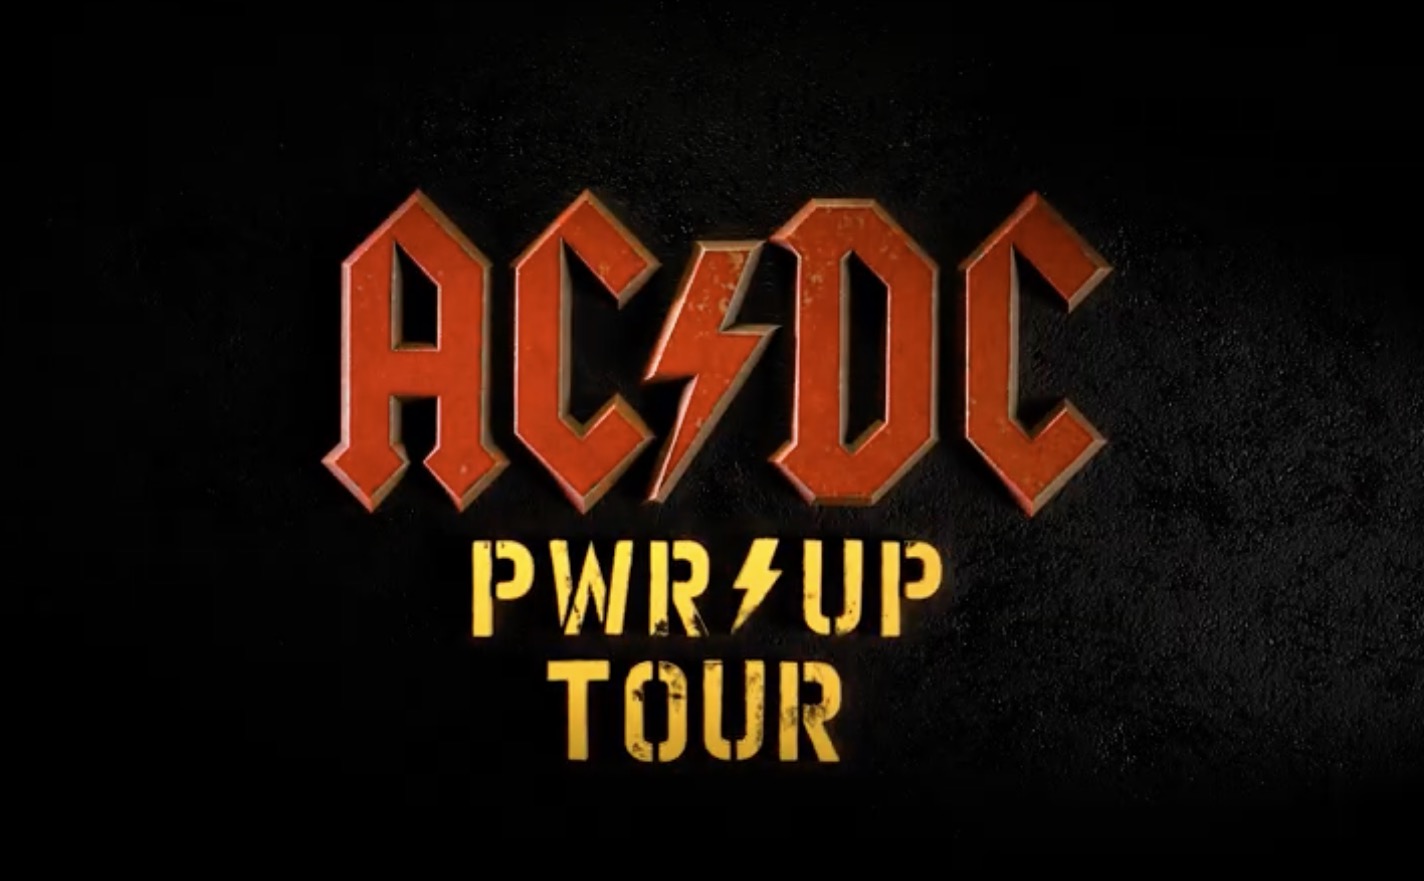 AC/DC at Veltins Arena Tickets